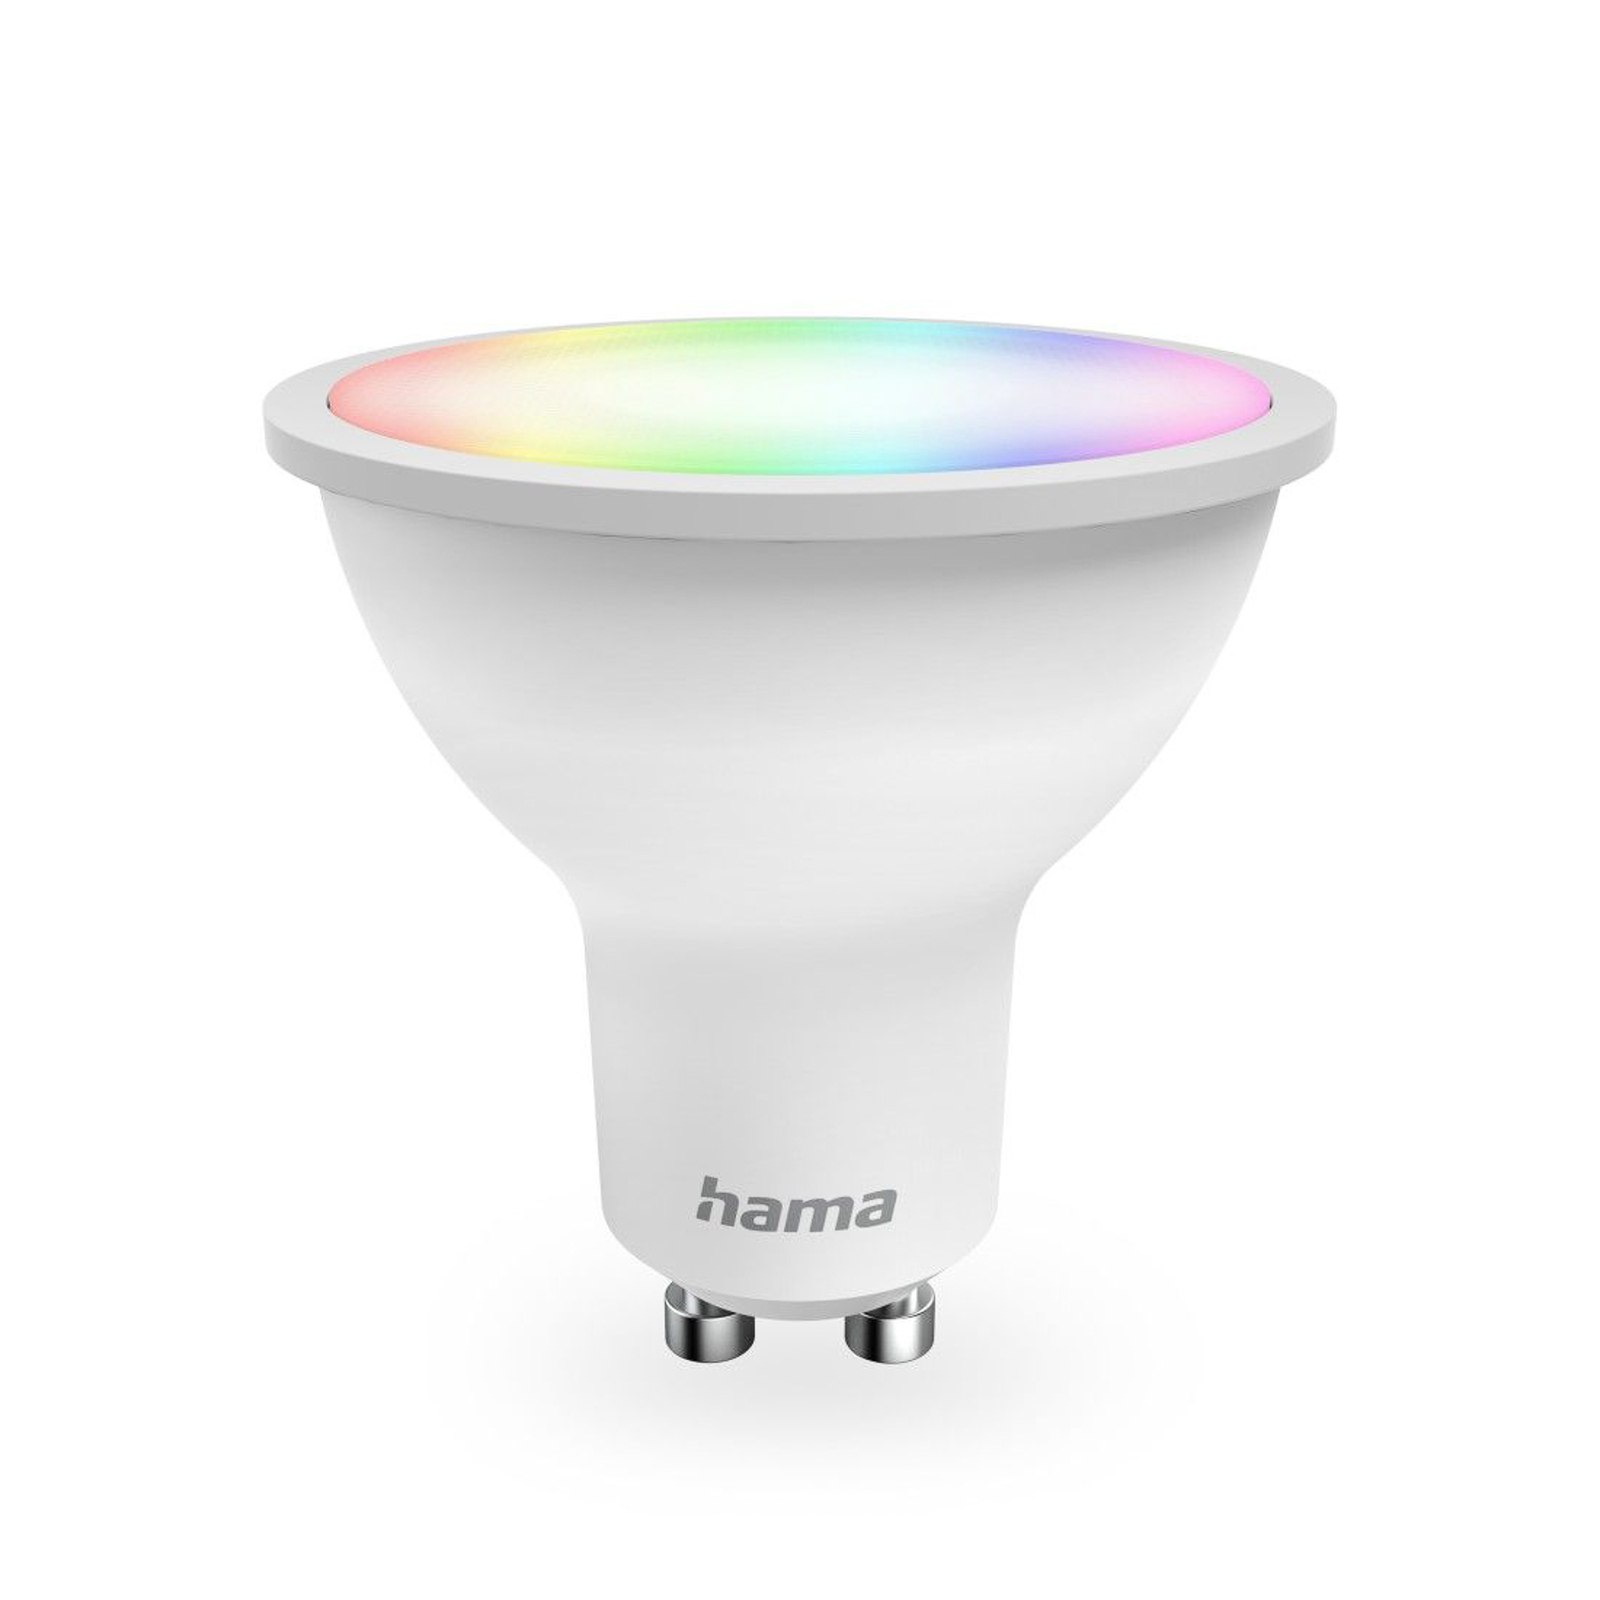 Hama Smart LED lamp helder GU10 WLAN Matter 4,9 W RGBW